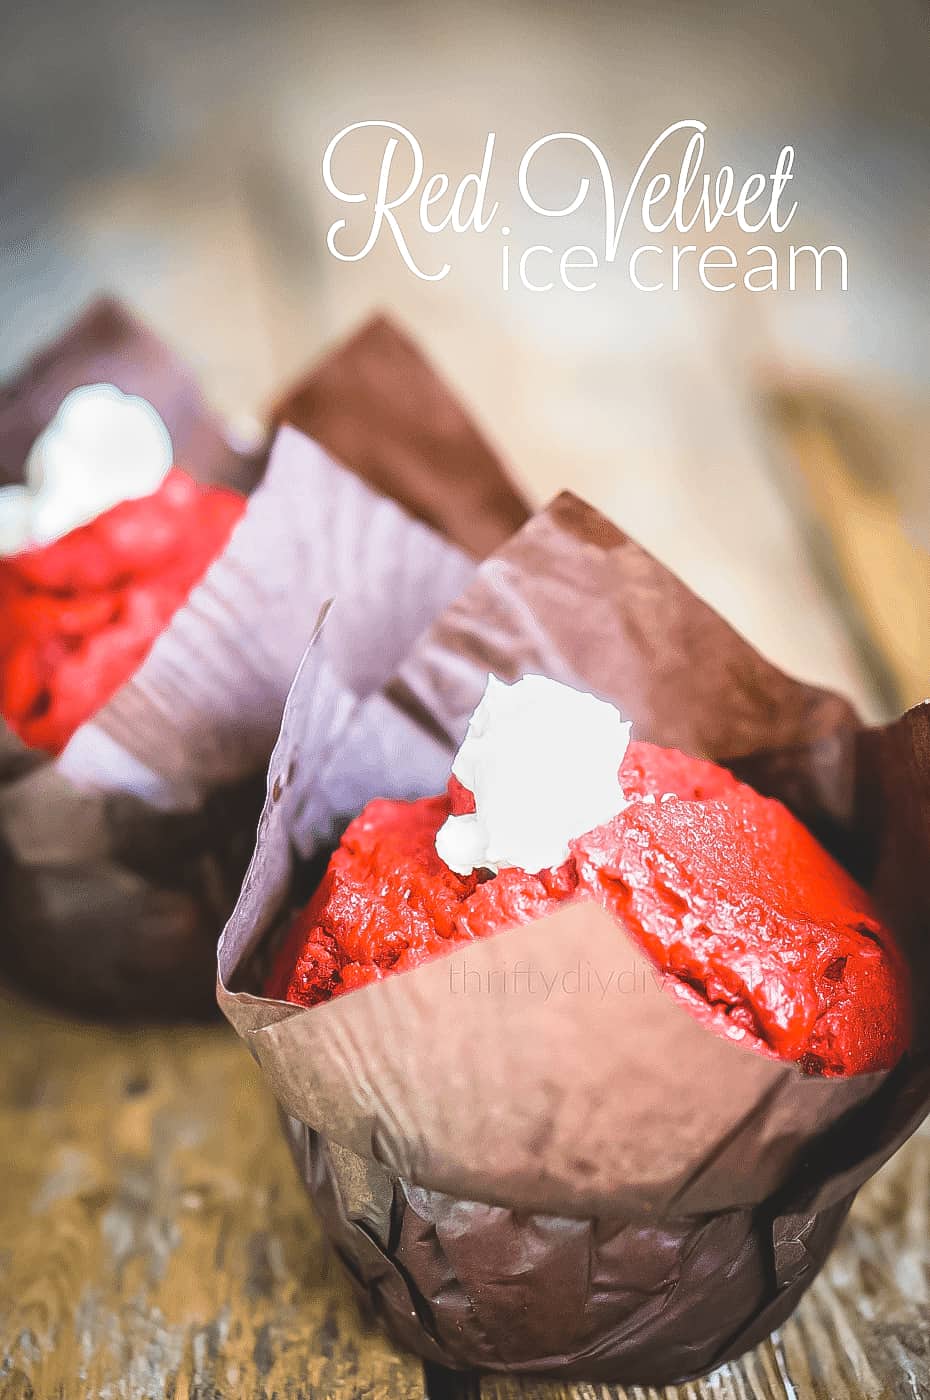 red velvet ice cream for Valentines day